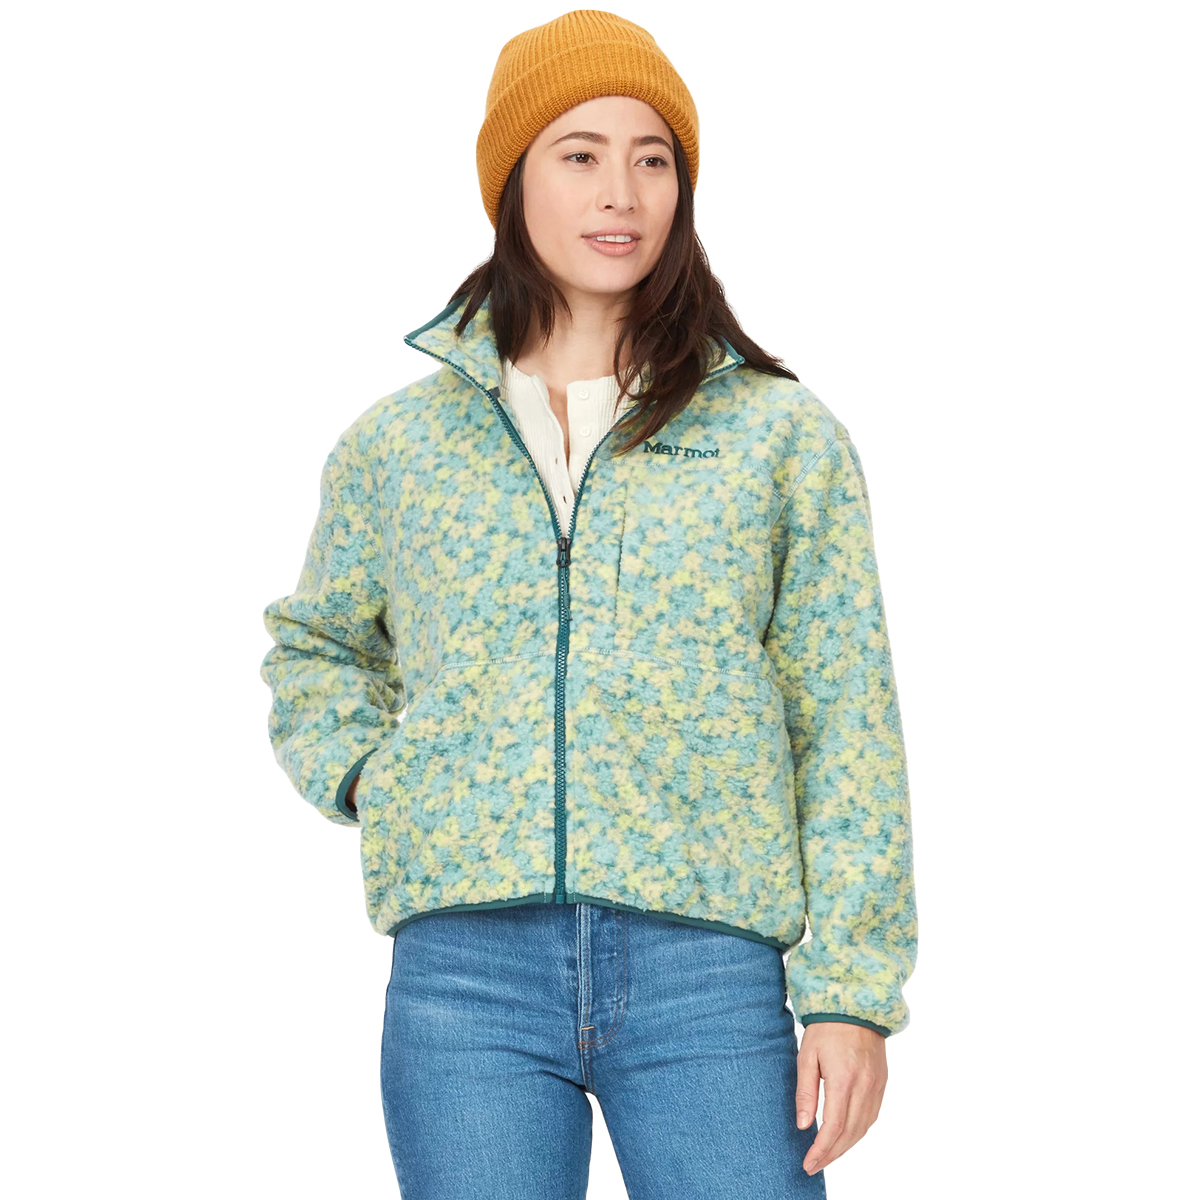 Marmot Women's Aros Printed Full-Zip Fleece Jacket